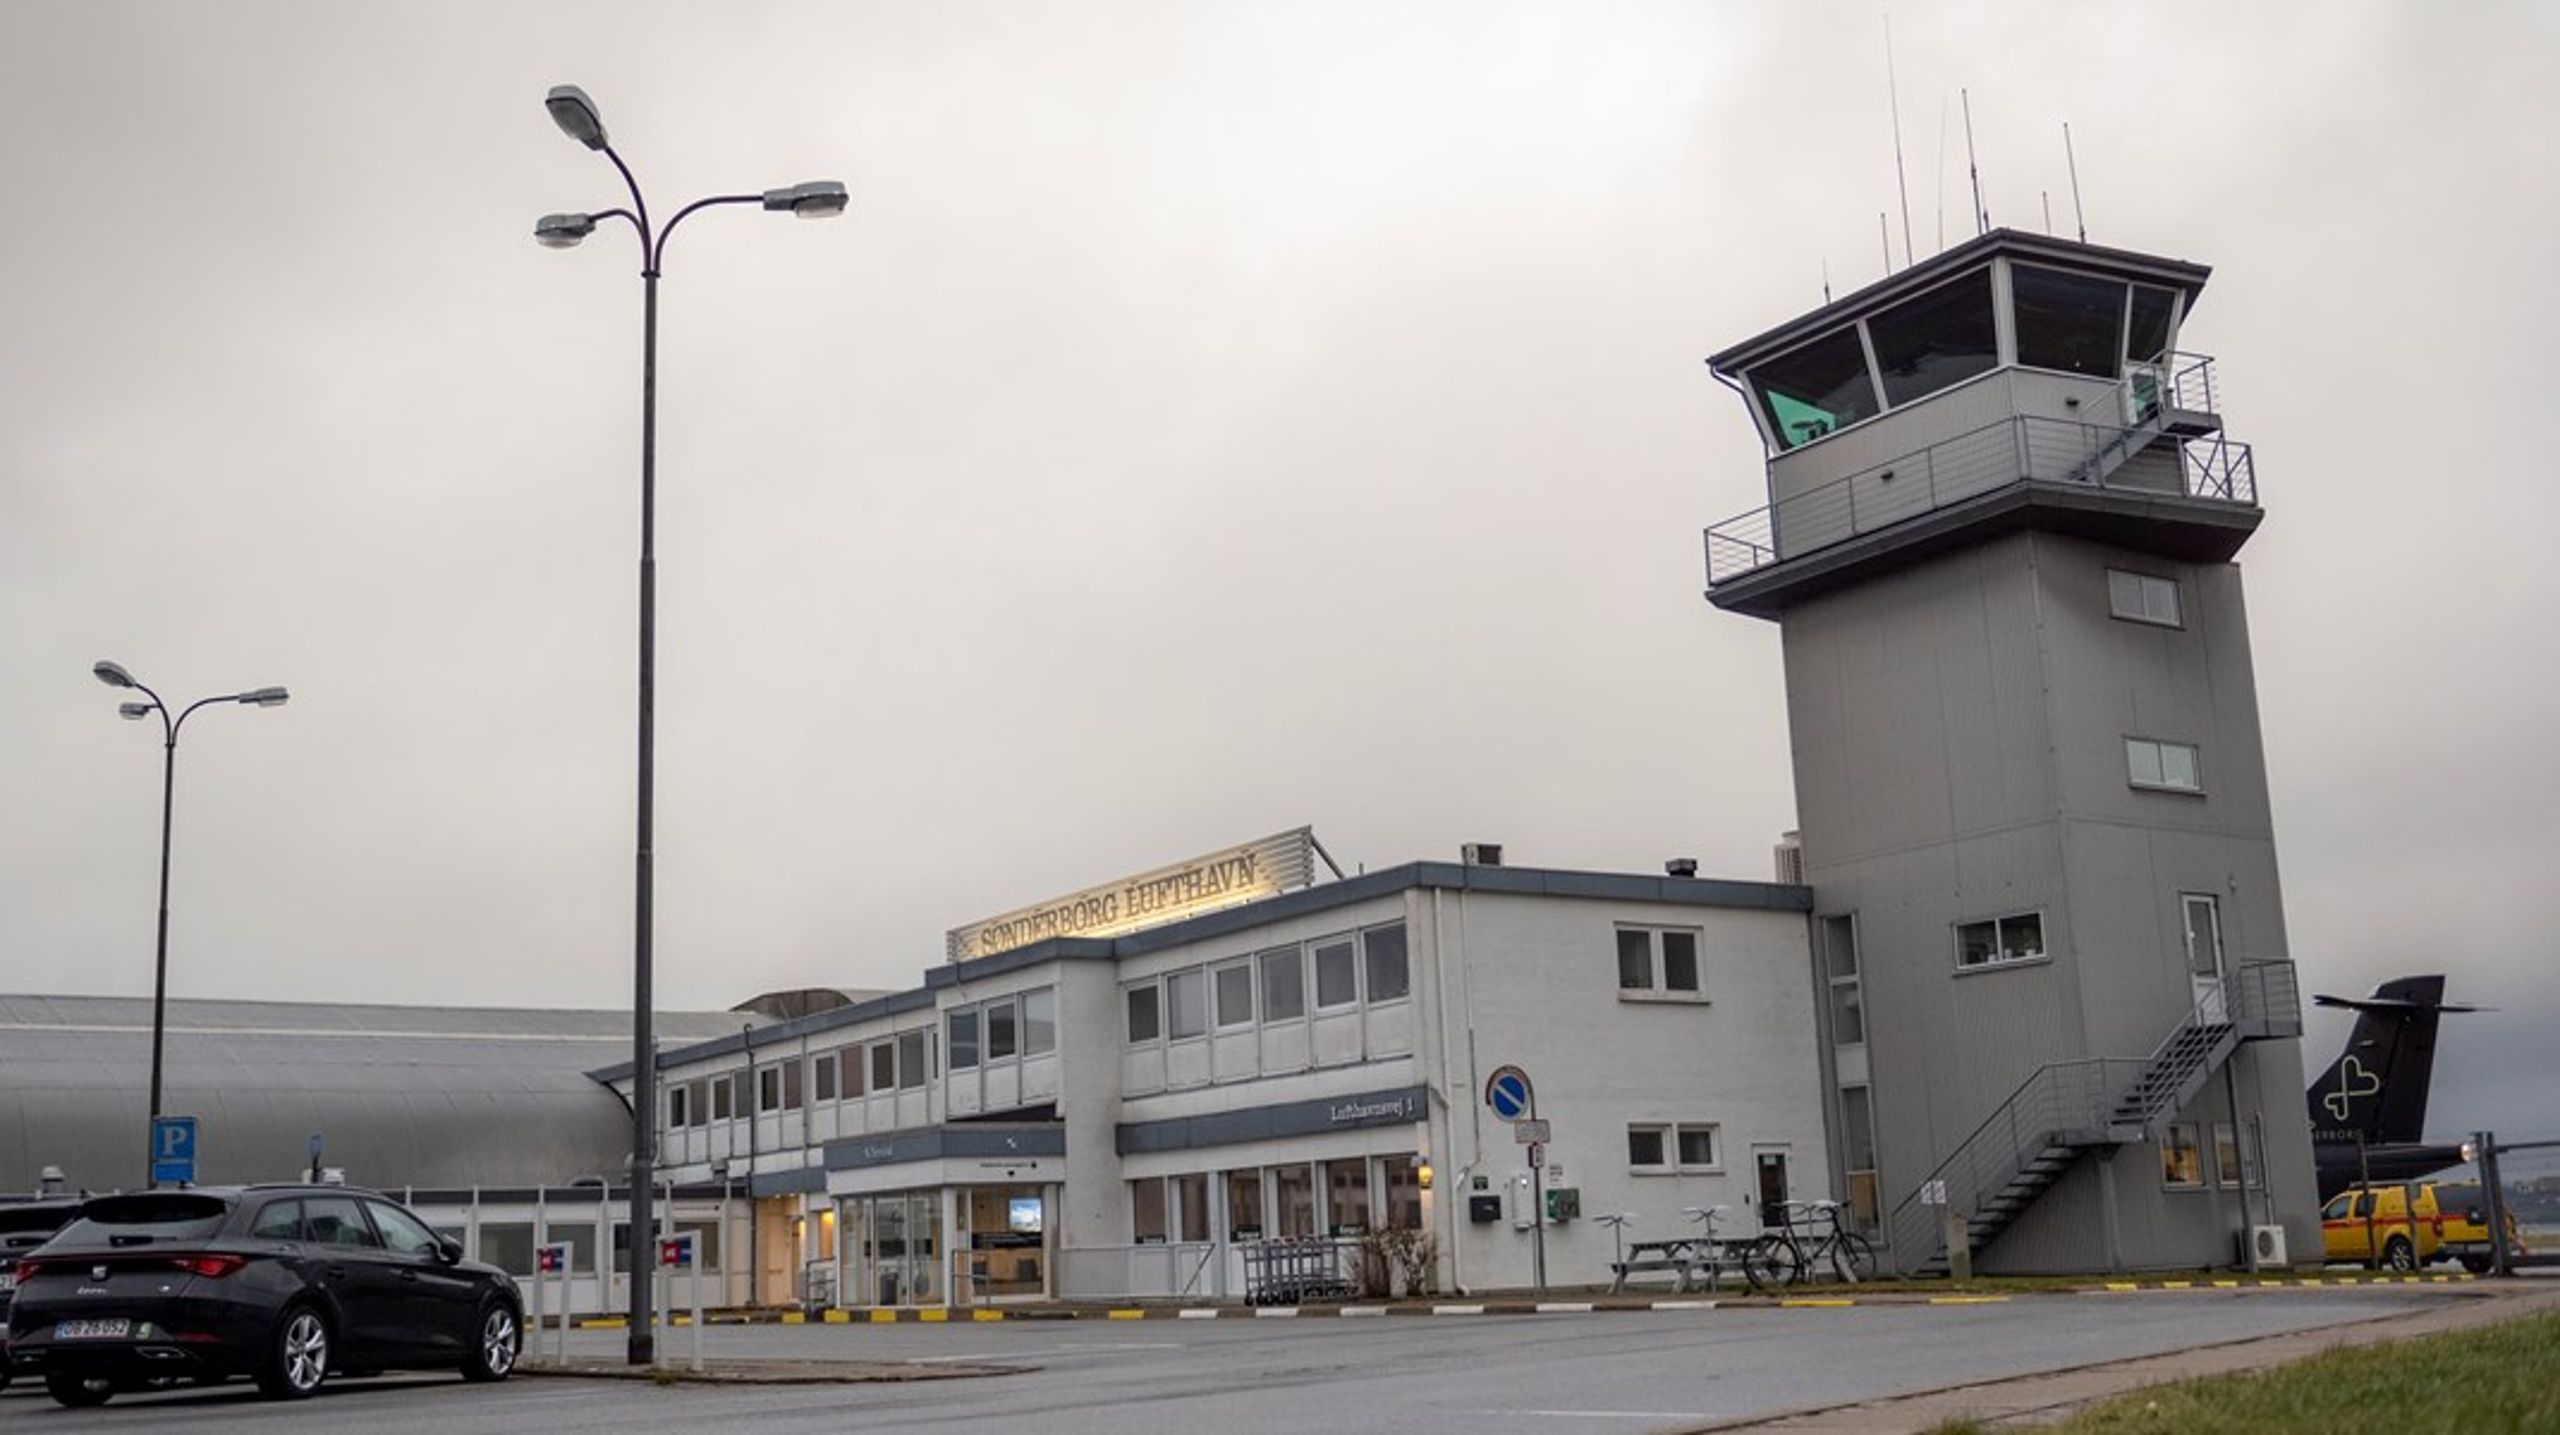 Sønderborg lufthavn er en af de lufthavne, der fra 2025 vil modtage ti millioner kroner den næste fem år. Lufthavnen modtager allerede på nuværende tispunkt statsstøtte.